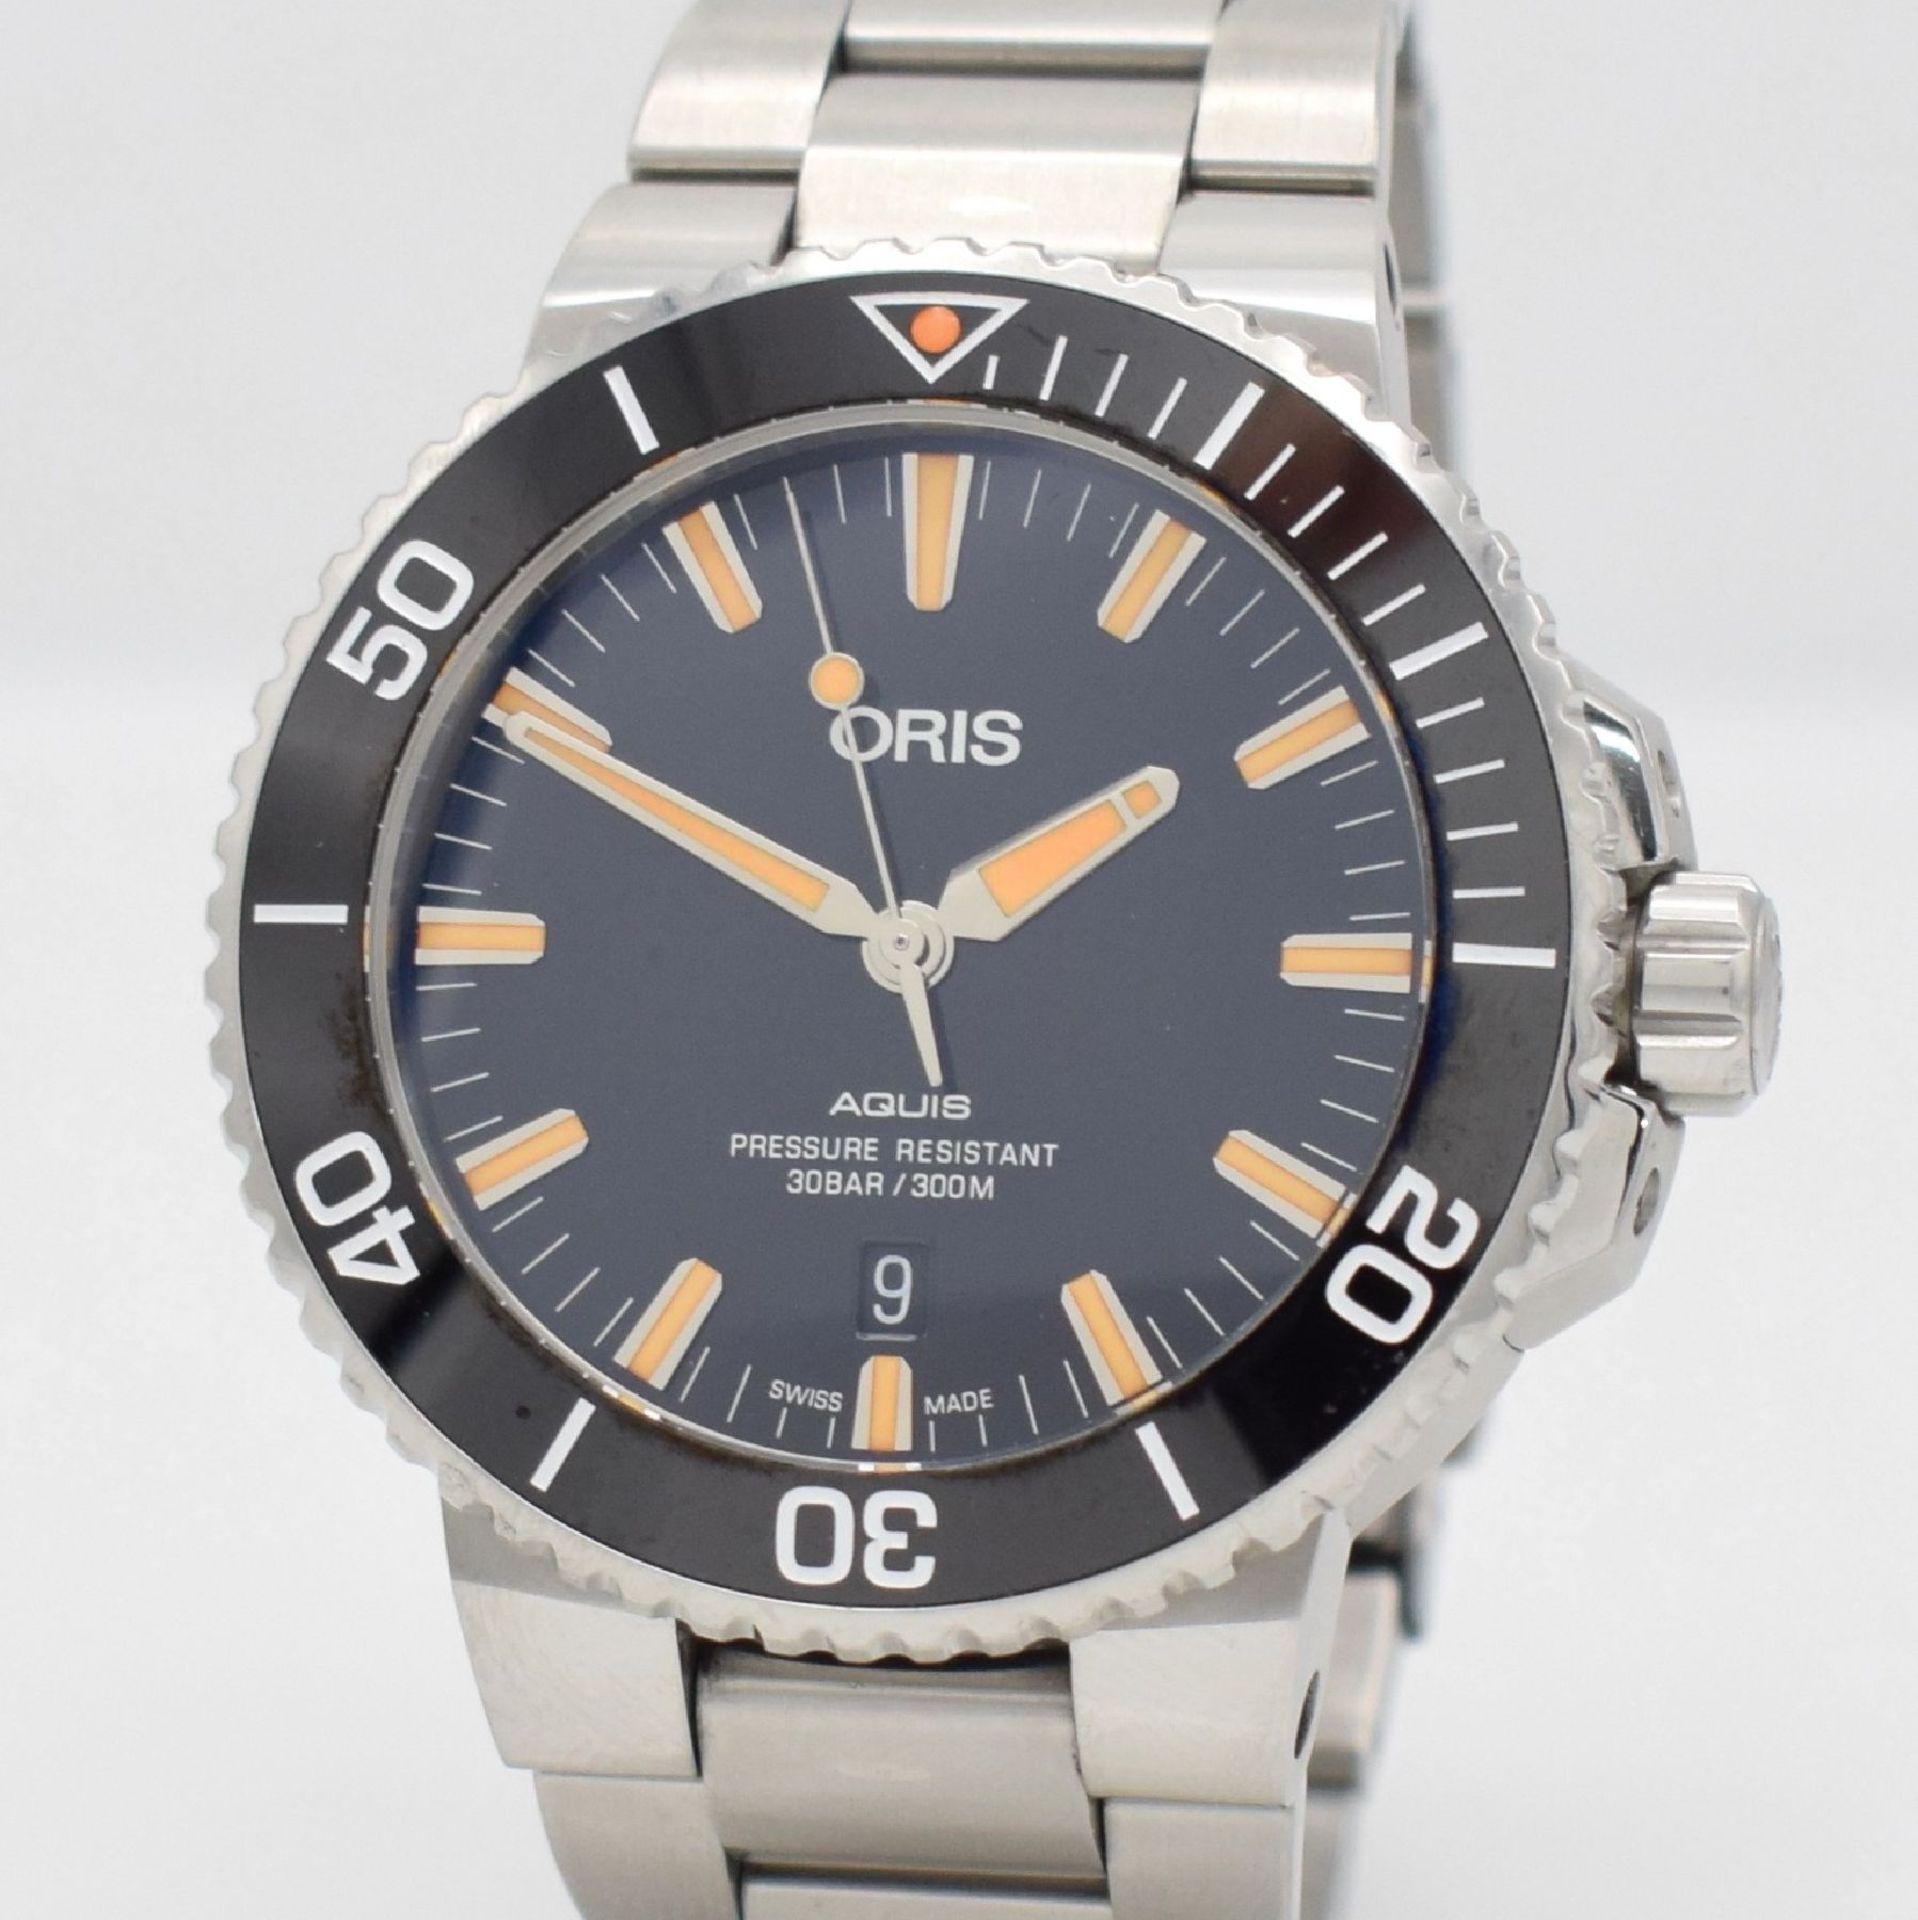 ORIS AQUIS gents wristwatch in stainless steel, Switzerland, reference 0173377304159- 0742464EB, - Bild 4 aus 8